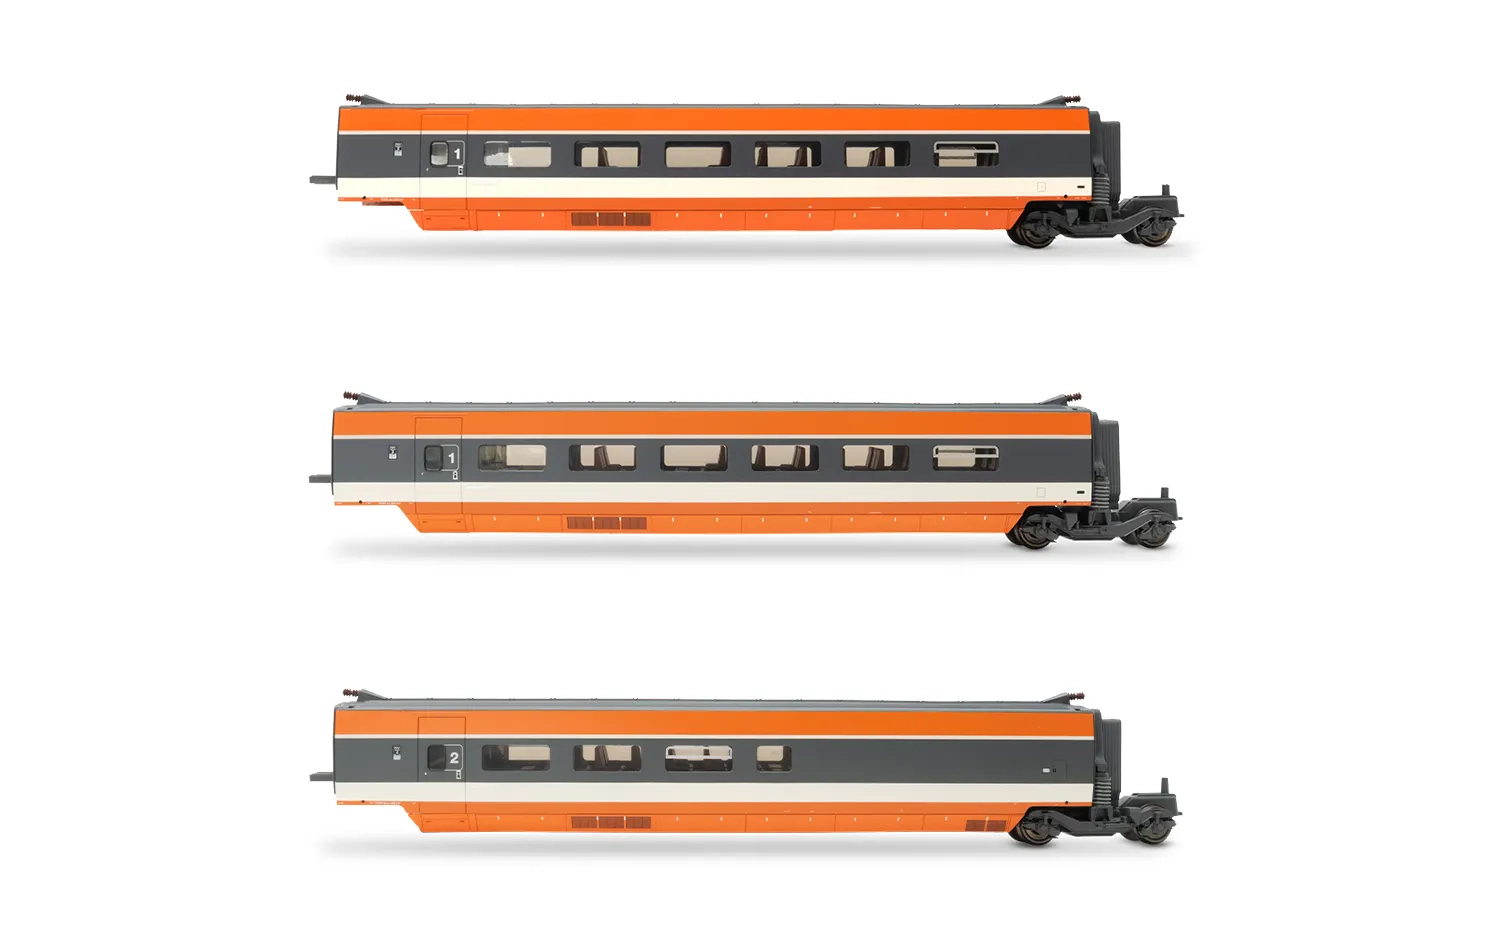 SNCF, coffret supplémentaire de 3 voitures TGV Sud-Est, 1981 version inaugurale, composé de 1 voiture de 1ére classe et 1 voiture bar, ép. IV